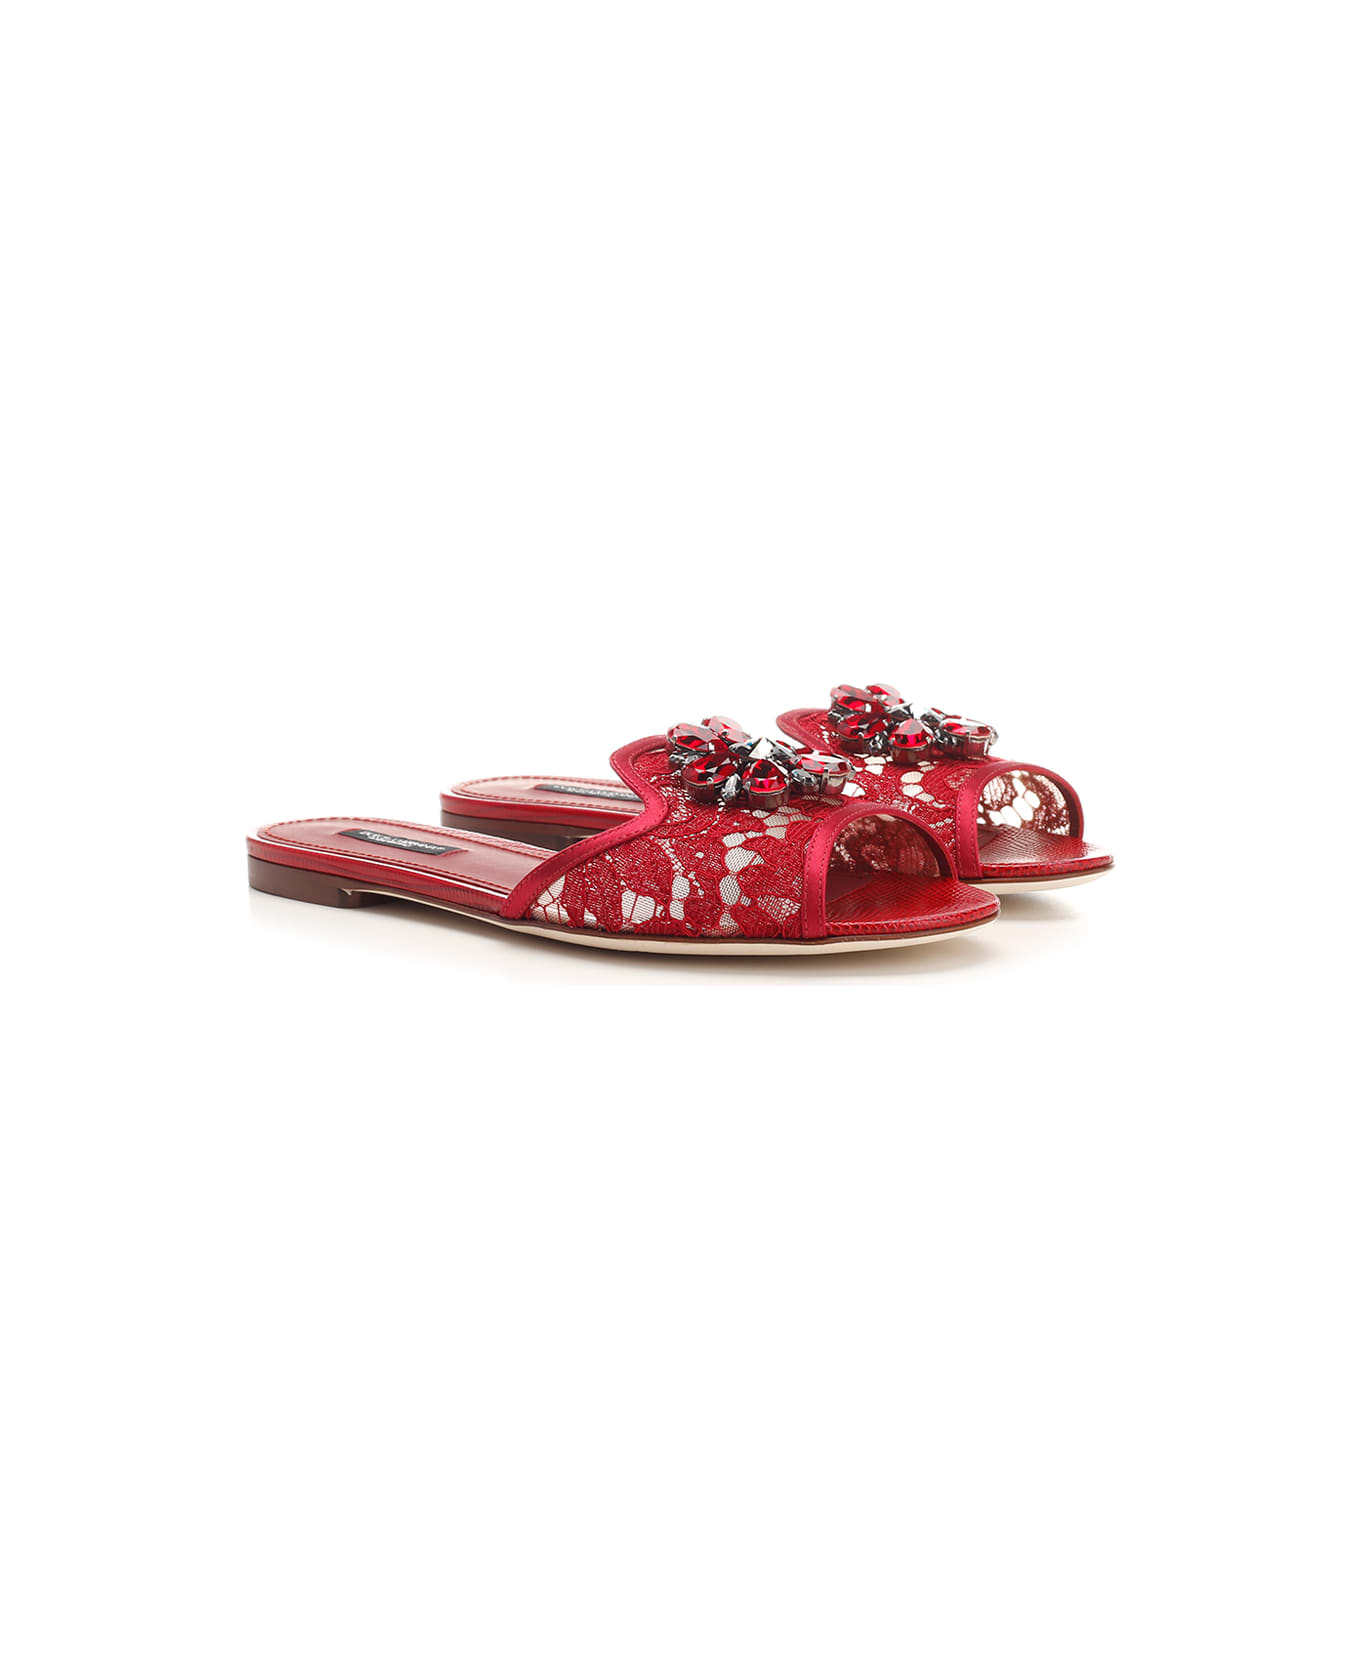 Dolce & Gabbana 'taormina' Lace Sandals - Red サンダル